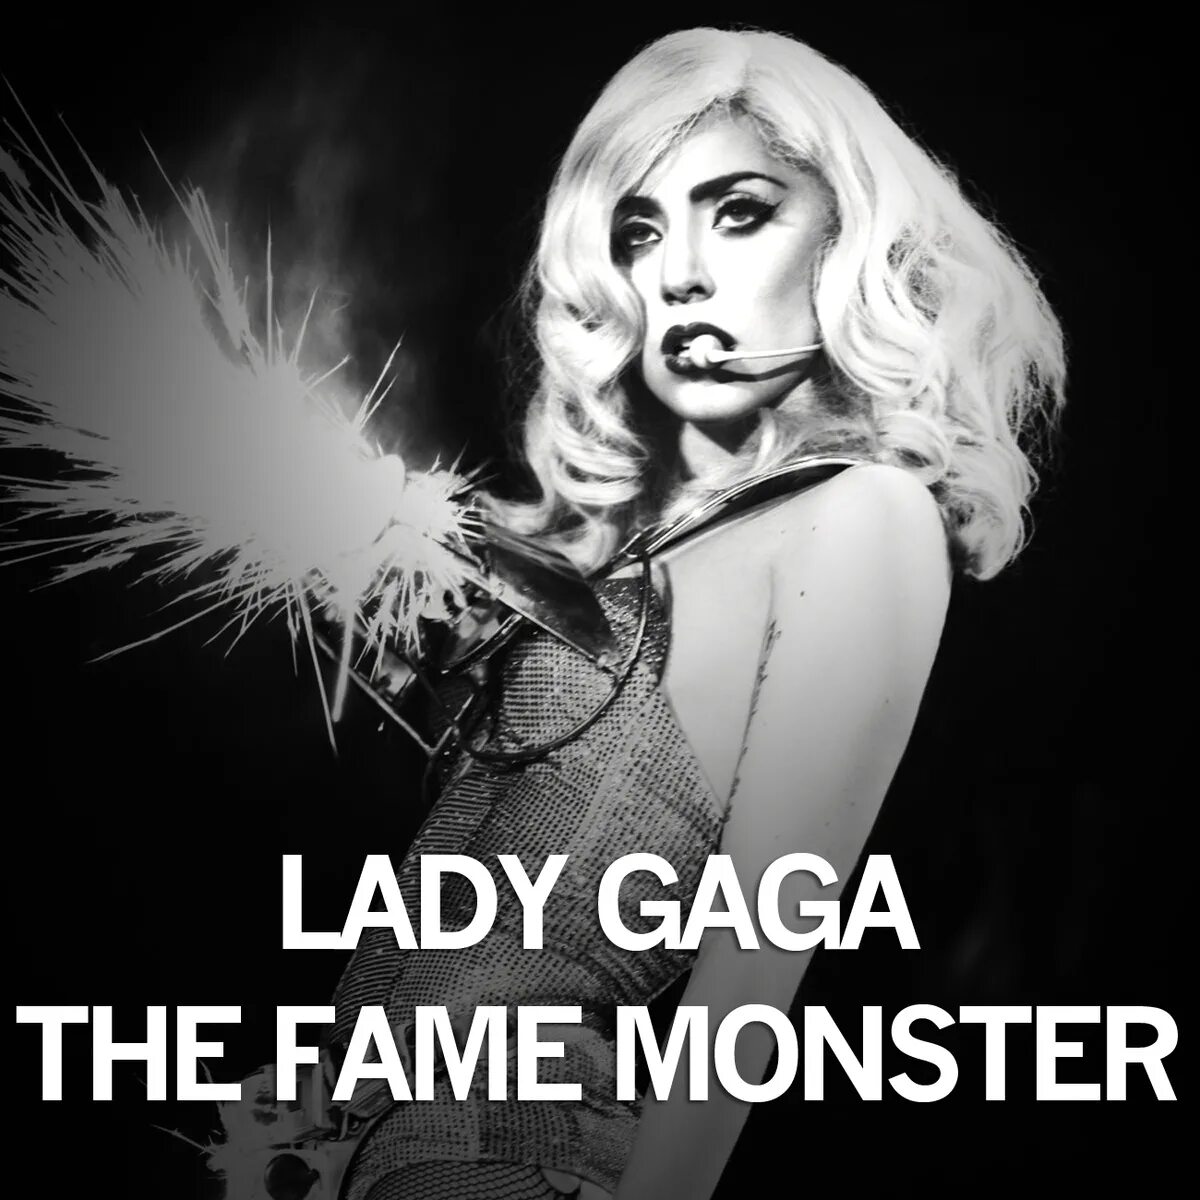 Леди гага на английском. Леди Гага the Fame Monster. Леди Гага альбом the Fame Monster. Леди Гага обложки альбомов. Леди Гага Фейм монстр обложка.